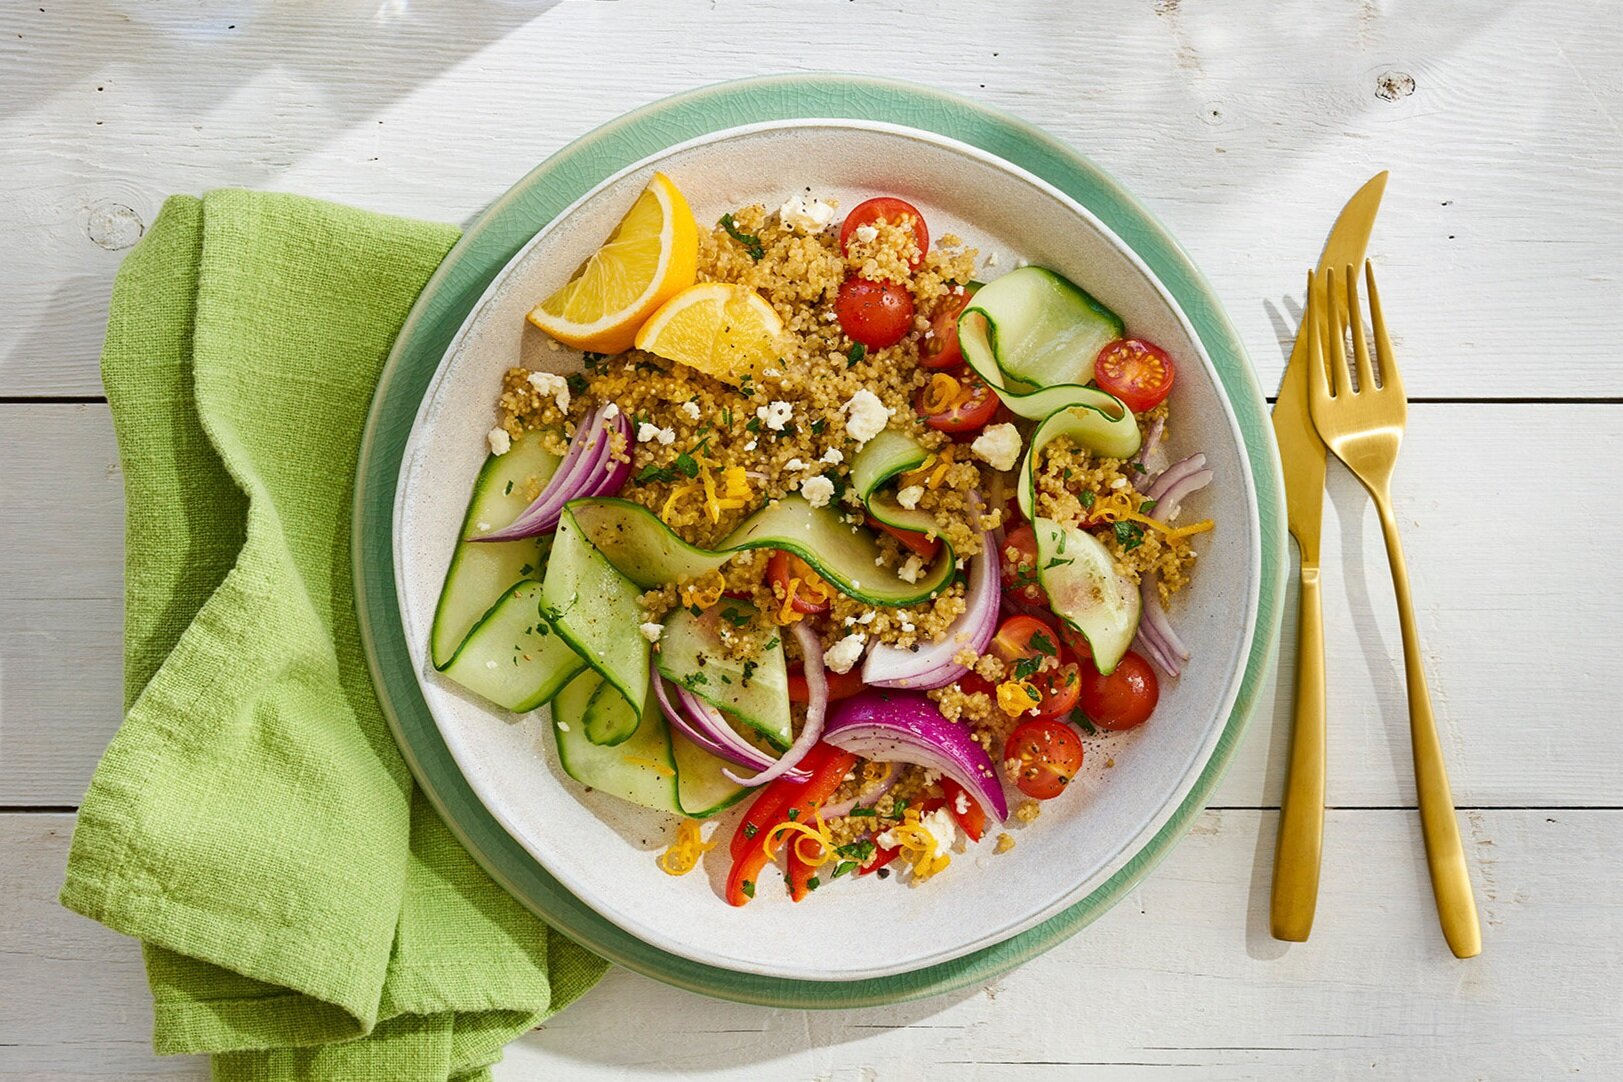 Knorr_Quinoa+Vegtable+Salad3455.jpg